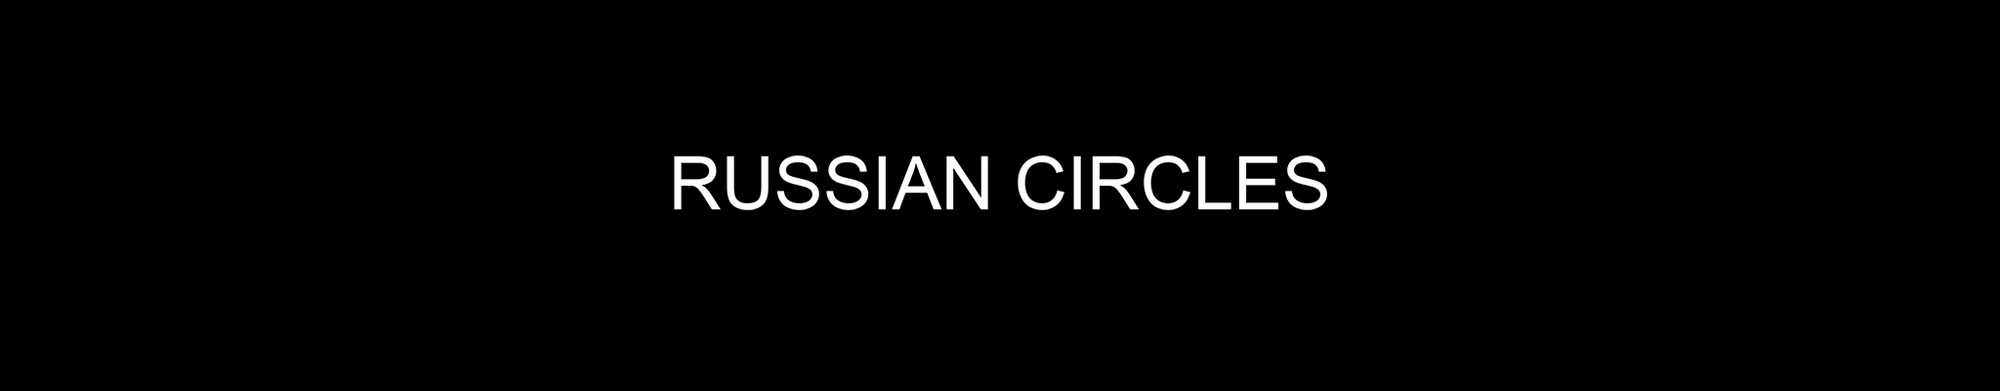 RUSSIAN CIRCLES